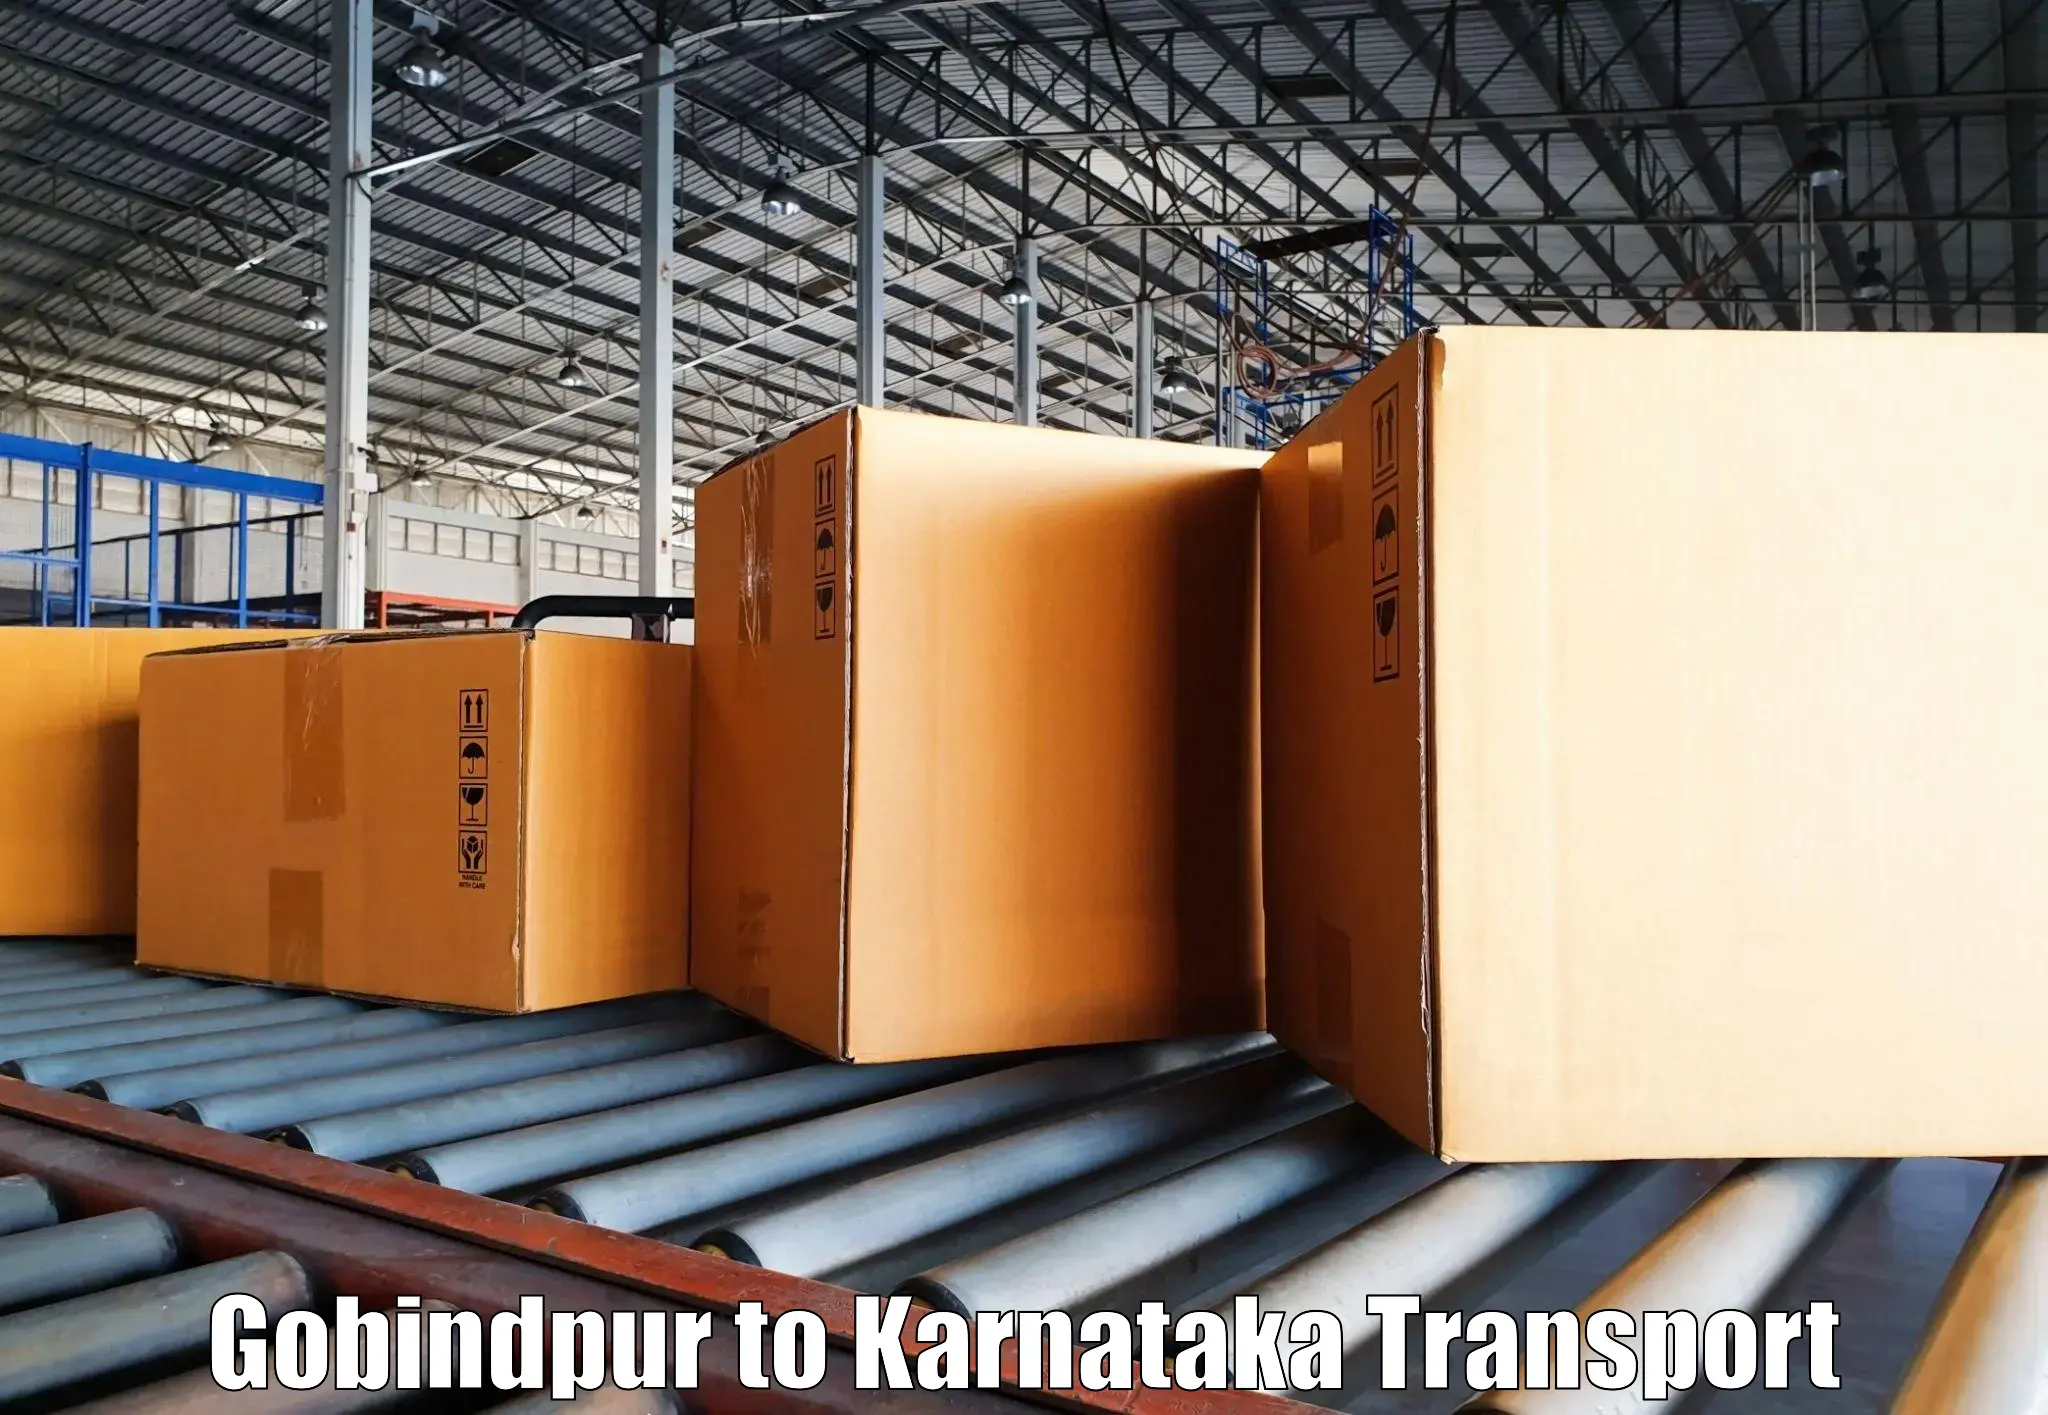 Pick up transport service Gobindpur to Anavatti